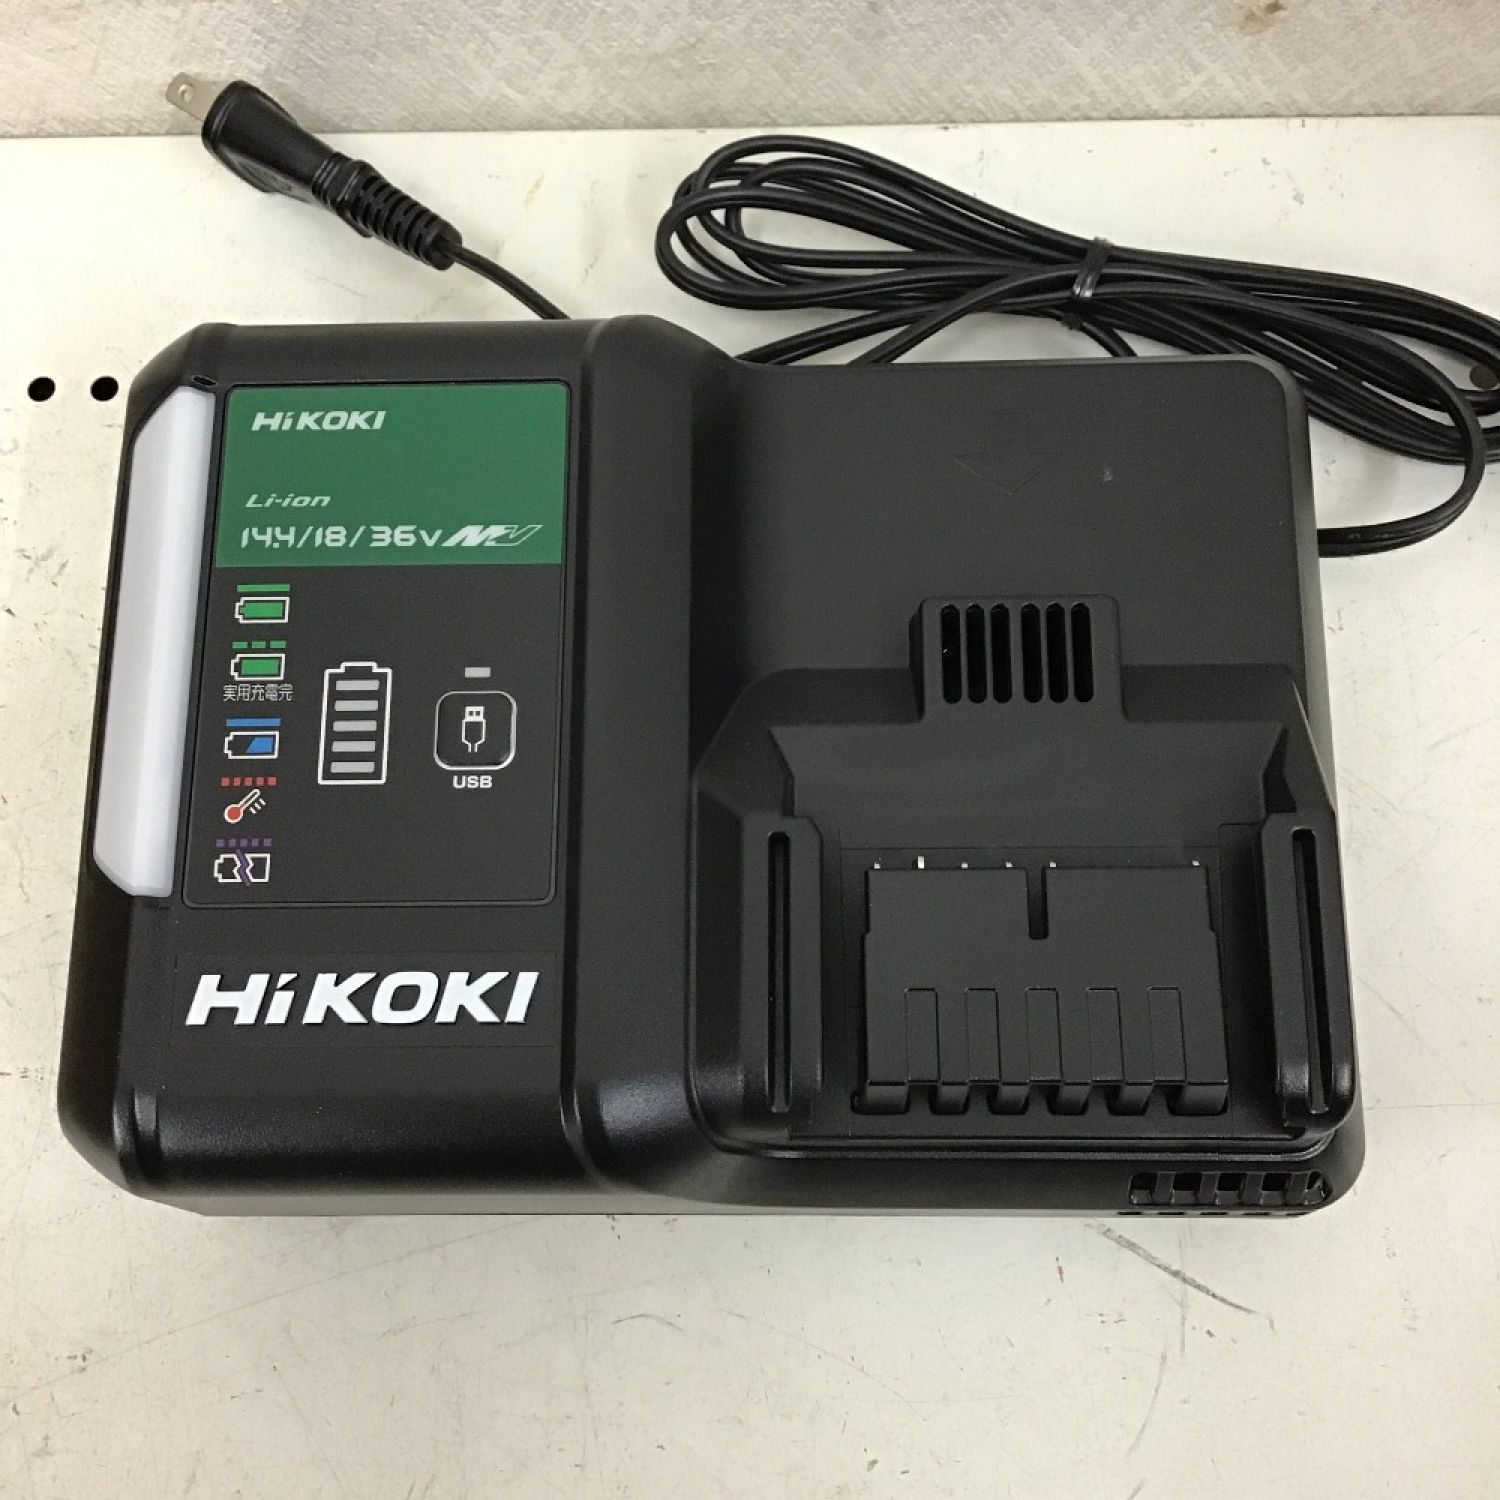 中古】 HiKOKI ハイコーキ 急速充電器 14.4/18V/36V USB 対応 本体のみ